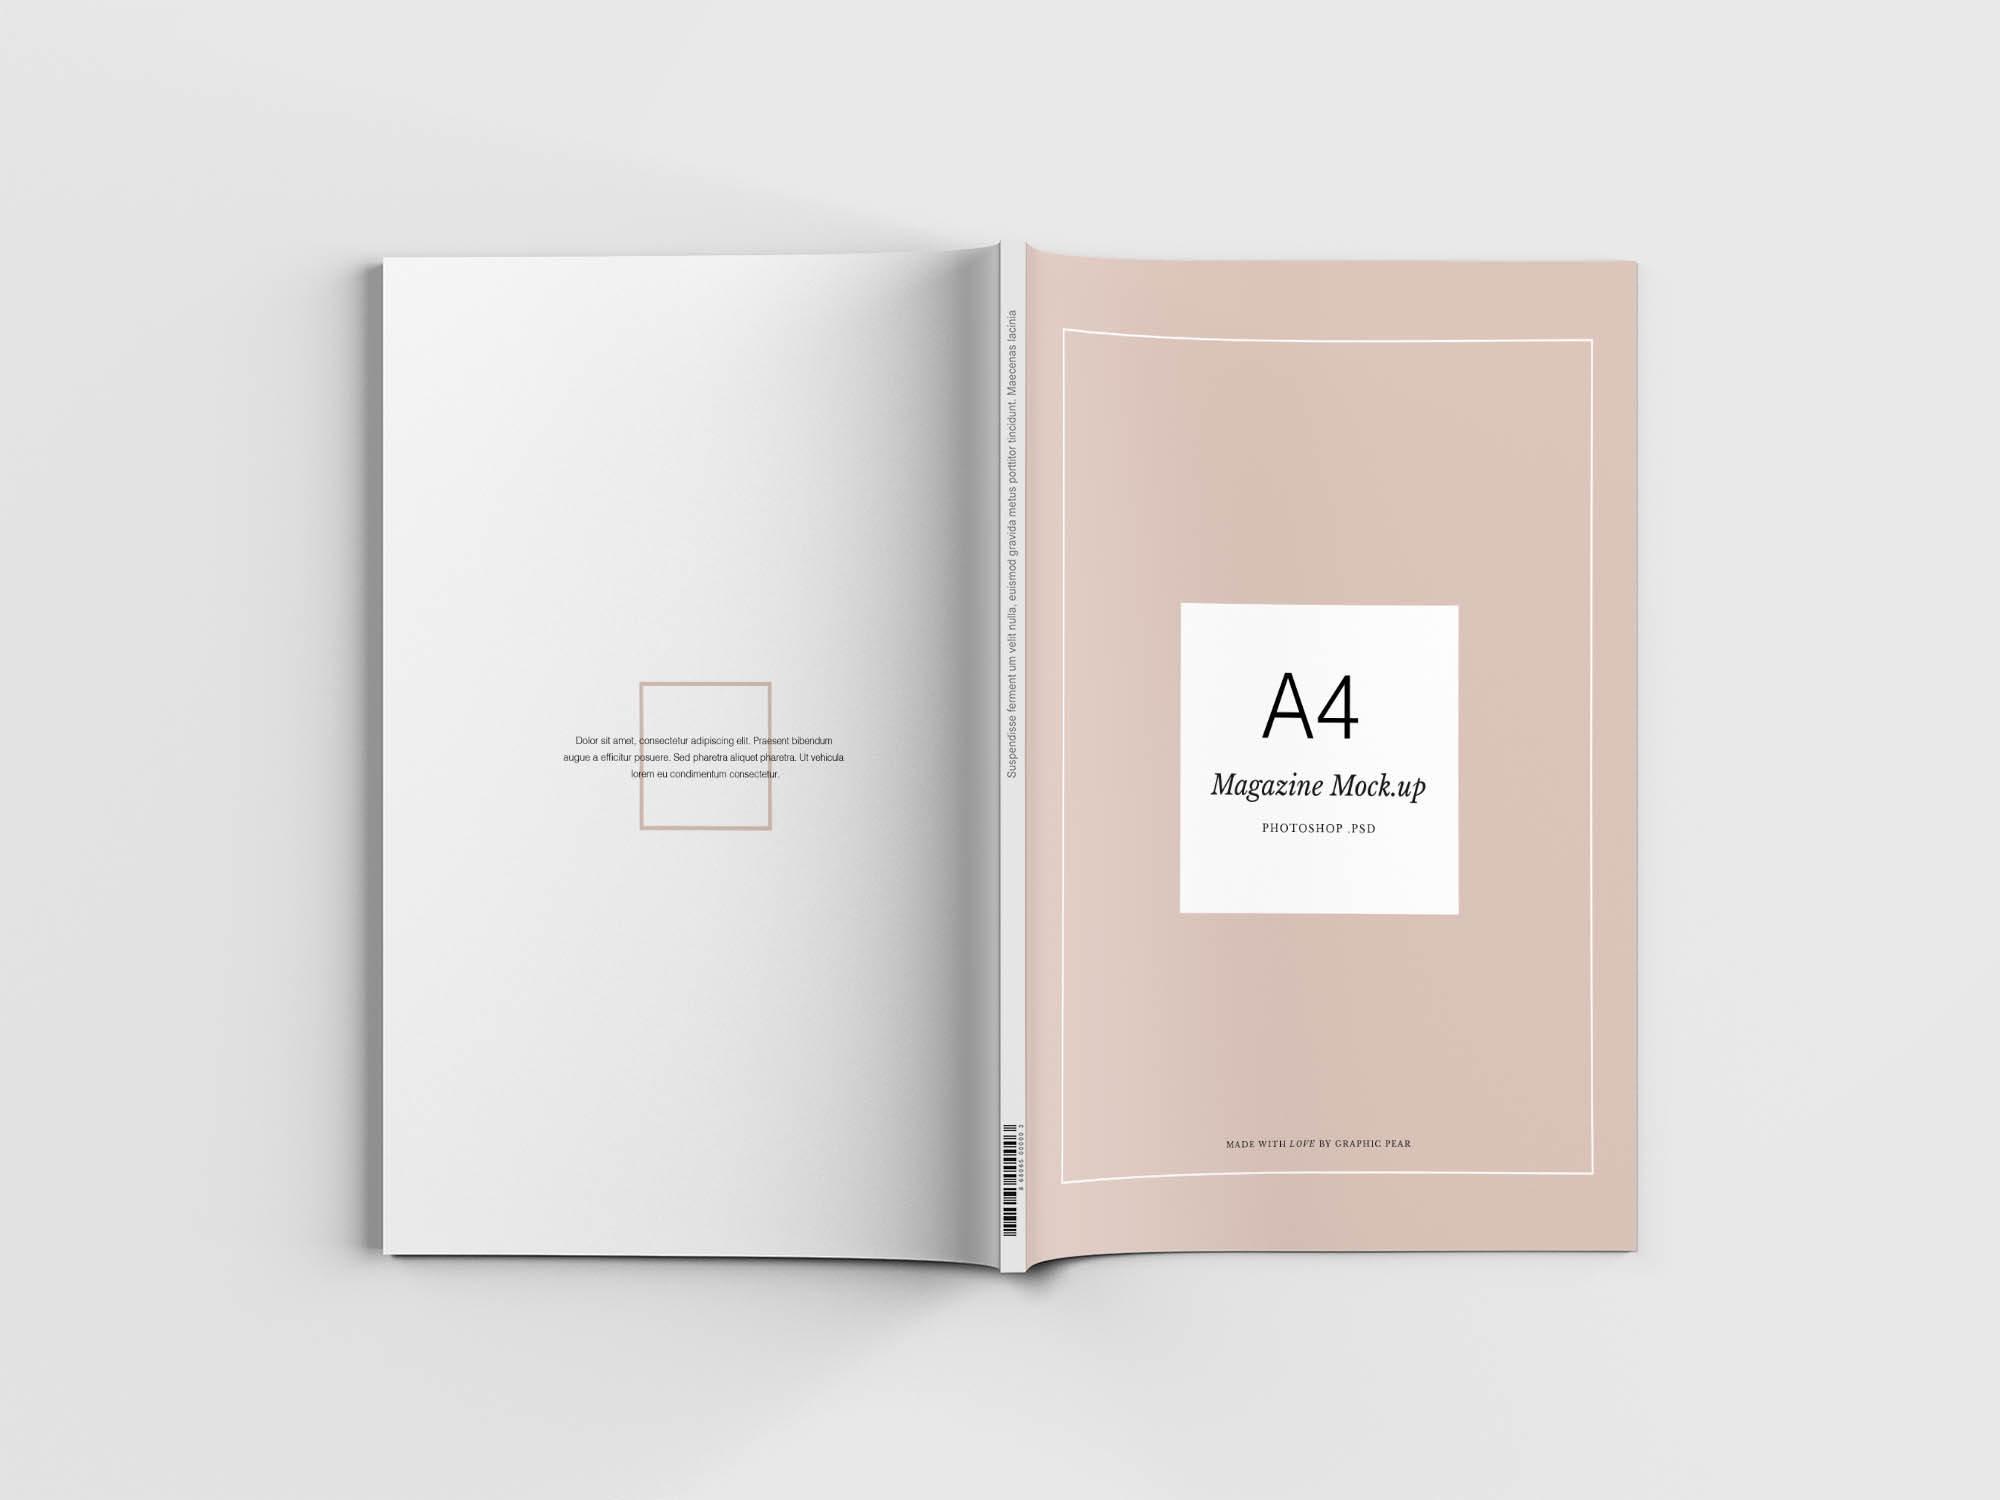 极简风A4规格杂志封面设计效果图样机 Minimal A4 Magazine Mockup插图(5)